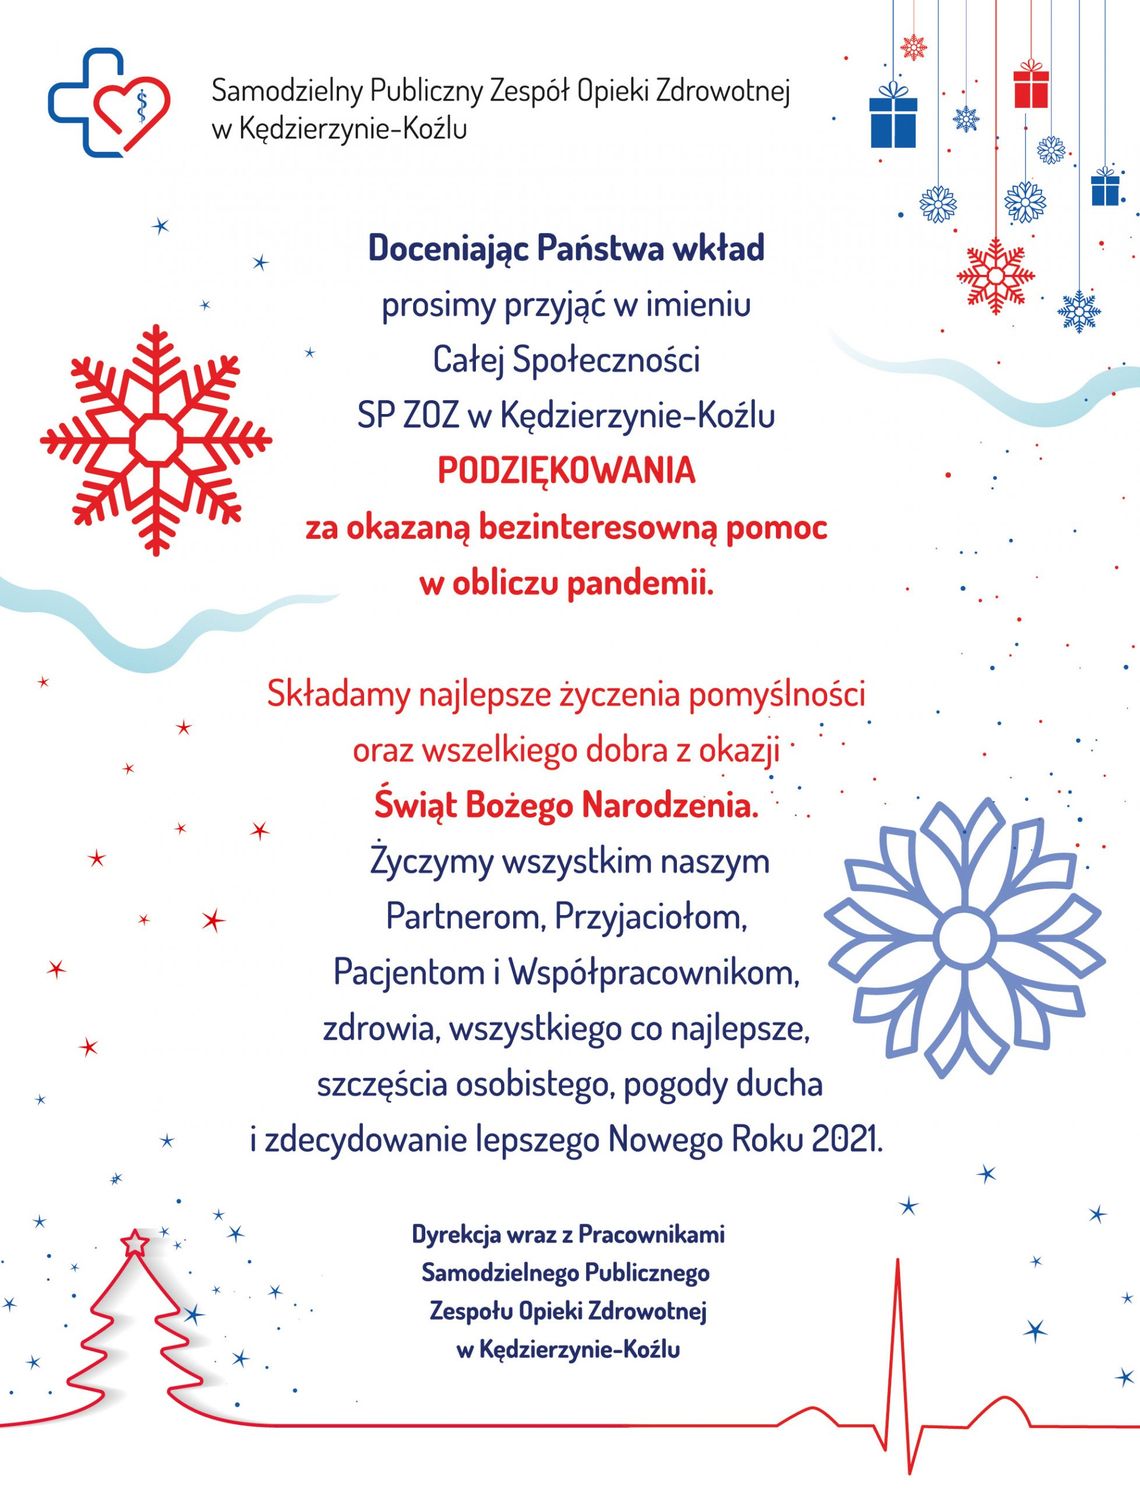 Życzenia bożonarodzeniowe i noworoczne Samodzielnego Publicznego Zespołu Opieki Zdrowotnej w Kędzierzynie-Koźlu dla Czytelników KK24.pl